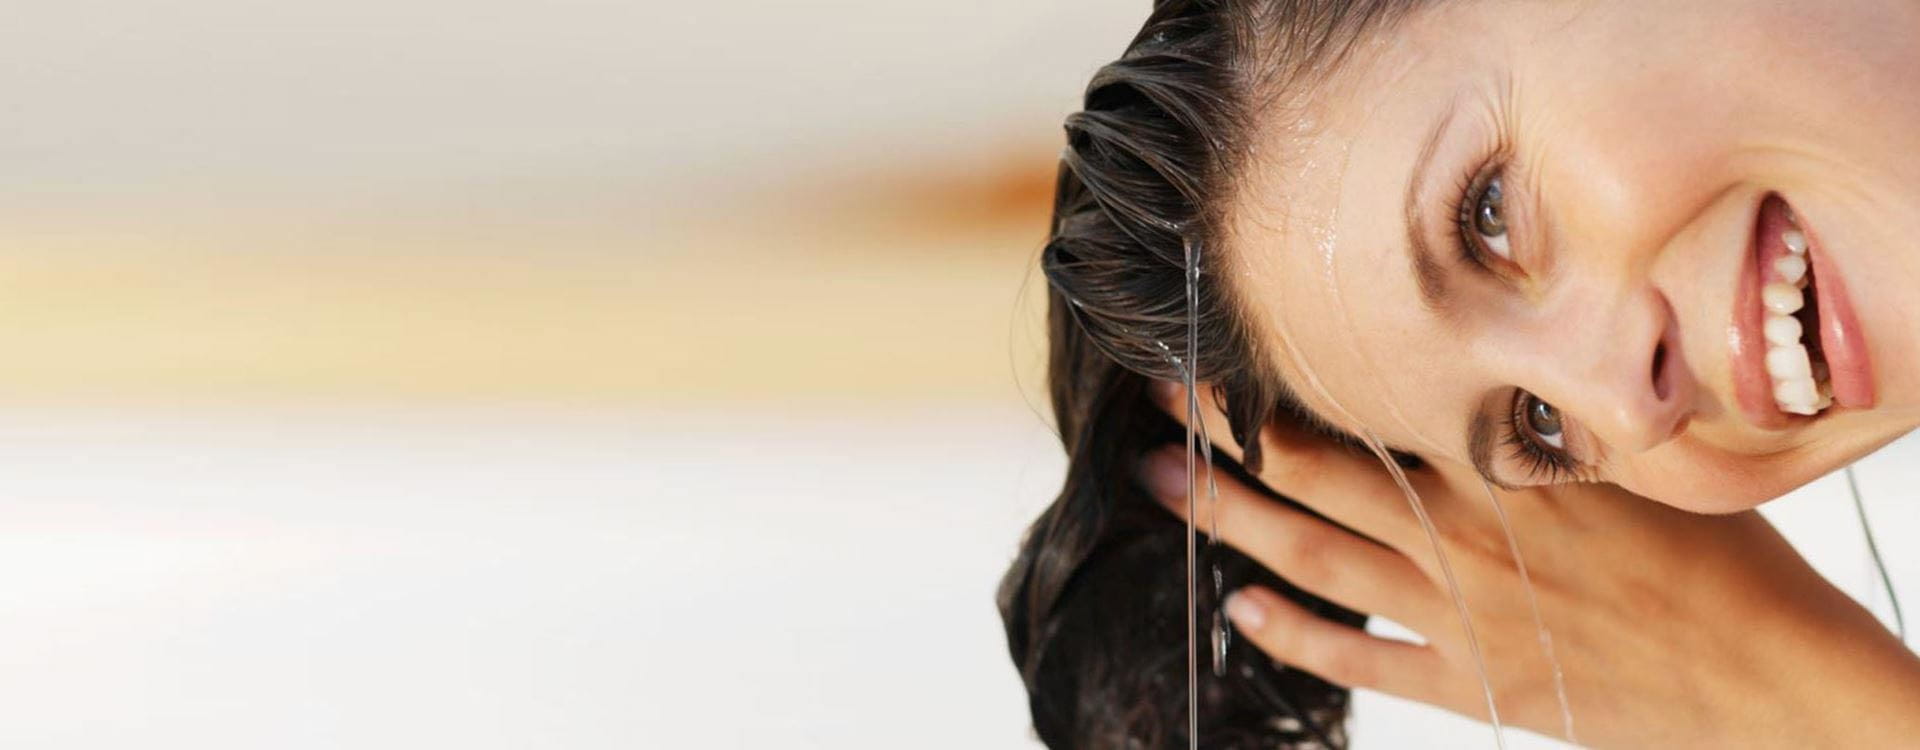 Professor Tips slim Wanneer kies je voor shampoo zonder siliconen?| NIVEA